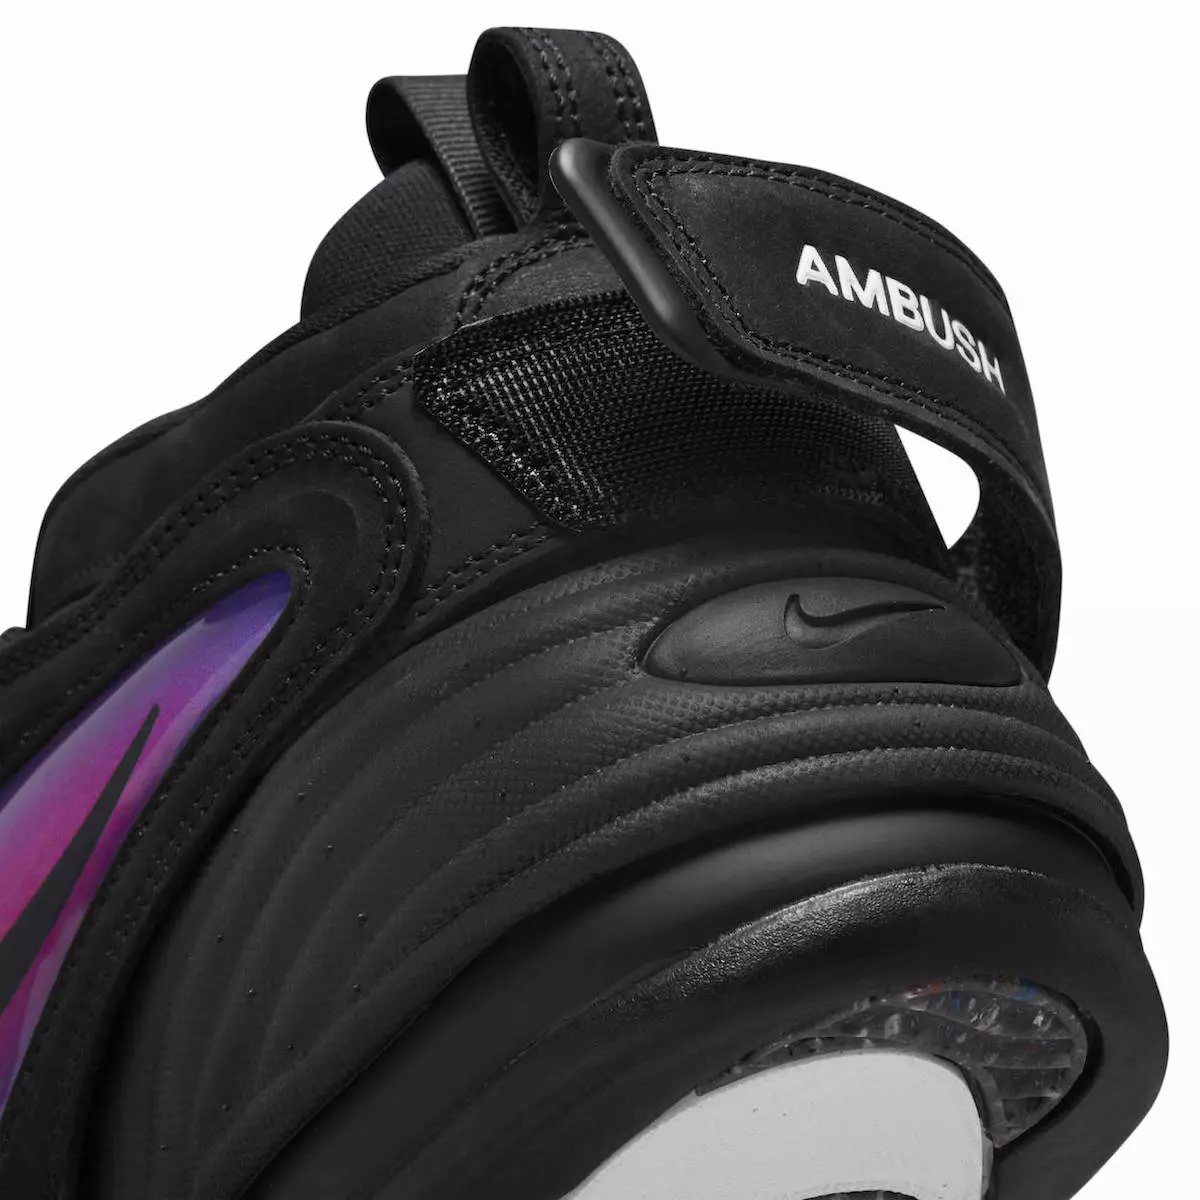 AMBUSH Nike Air Adjust Force Black DM8465-001 Ngày phát hành